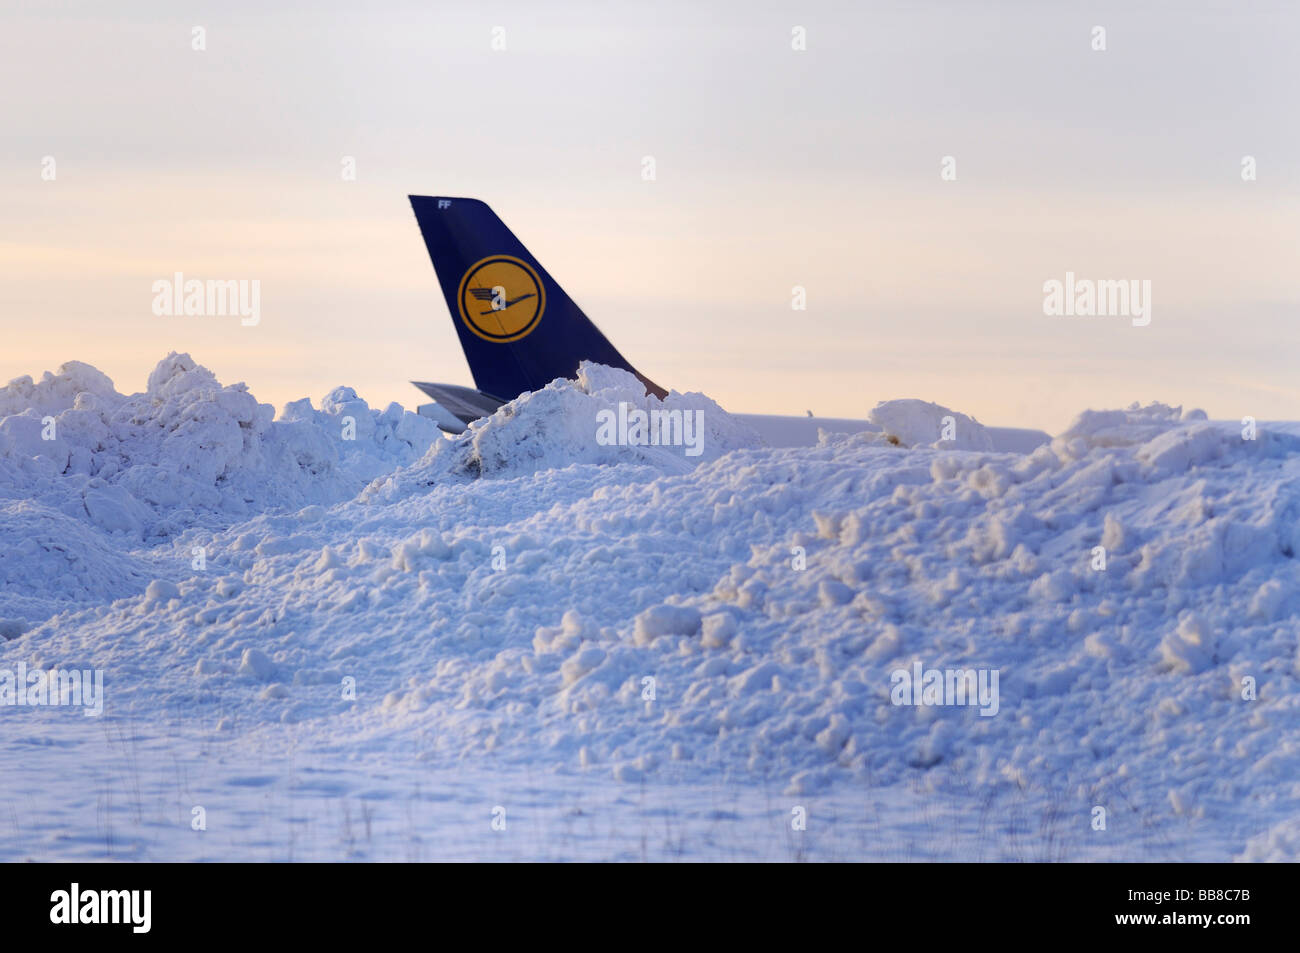 Lufthansa aleta de cola detrás de los montículos de nieve al lado de una pista Foto de stock